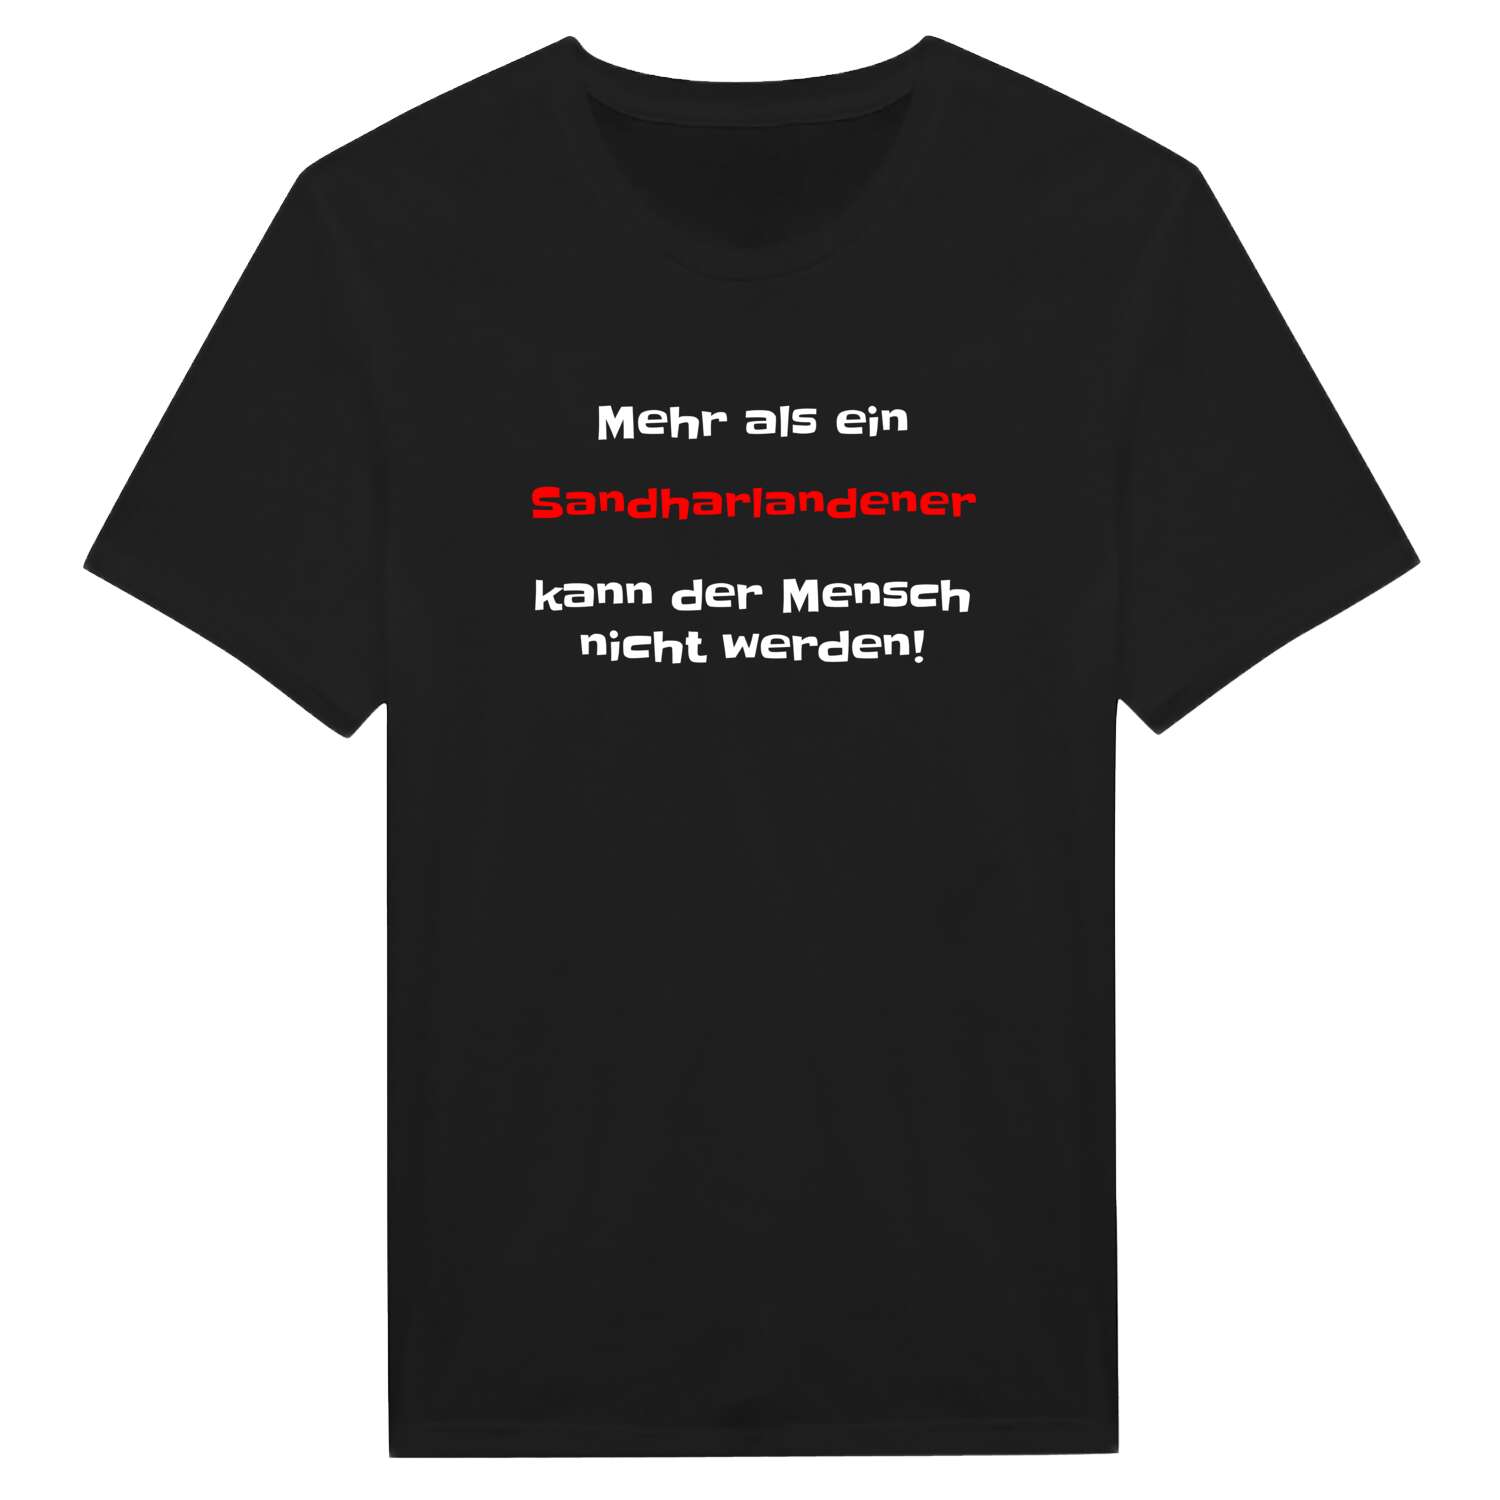 Sandharlanden T-Shirt »Mehr als ein«